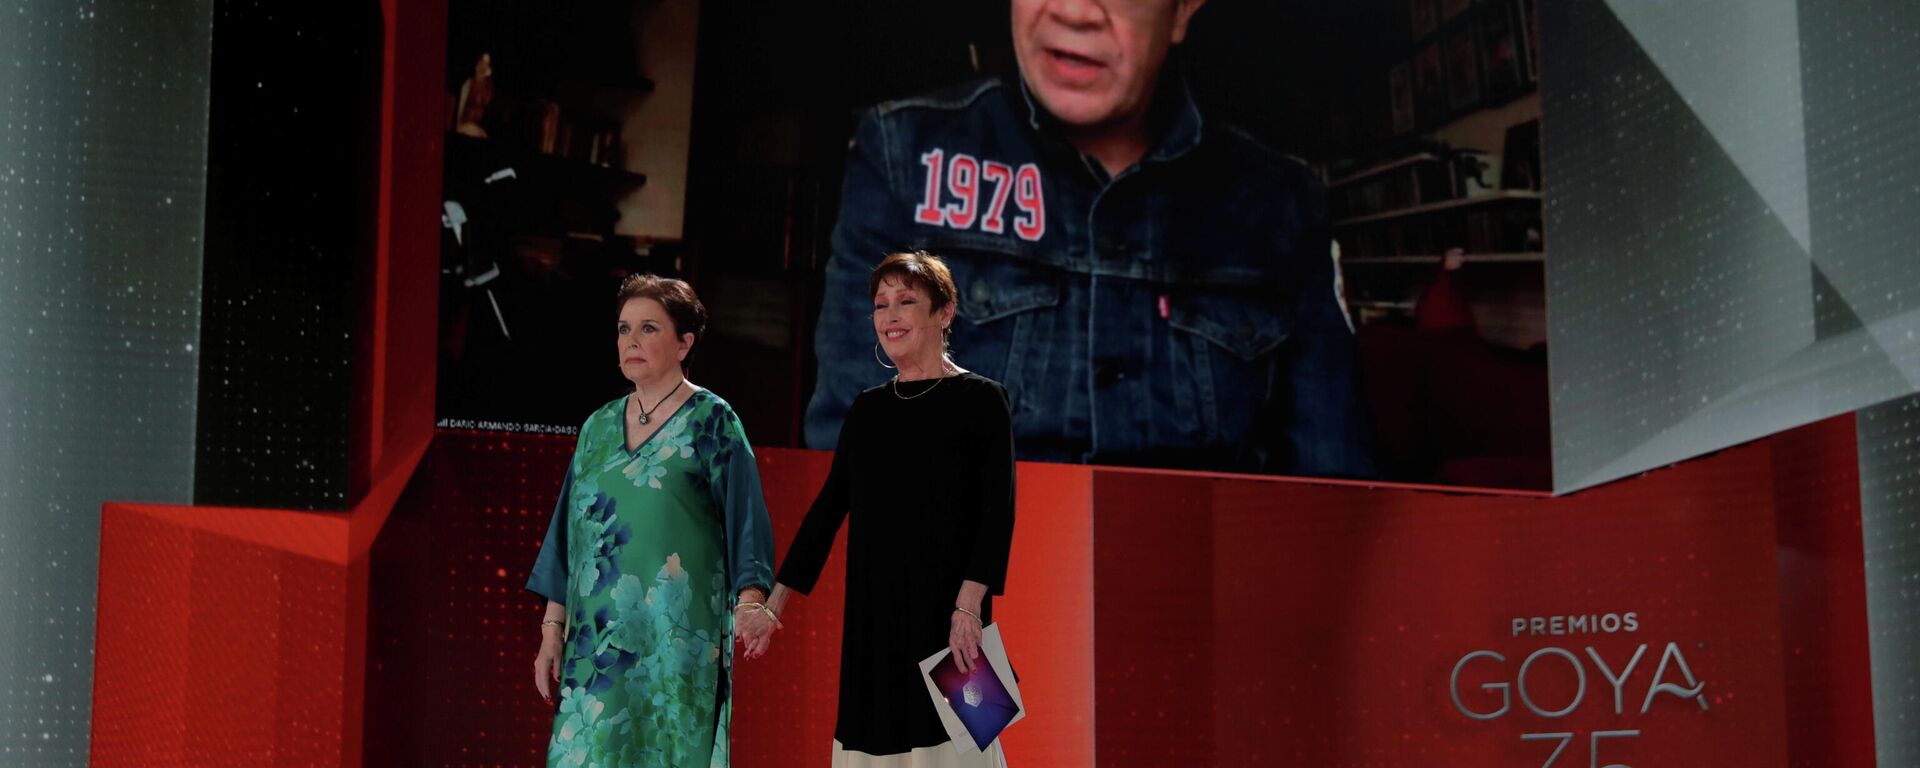 El productor colombiano Dago Garcia y actrices españolas Monica Randall y Veronica Forque en los premios Goya 2021 - Sputnik Mundo, 1920, 07.03.2021